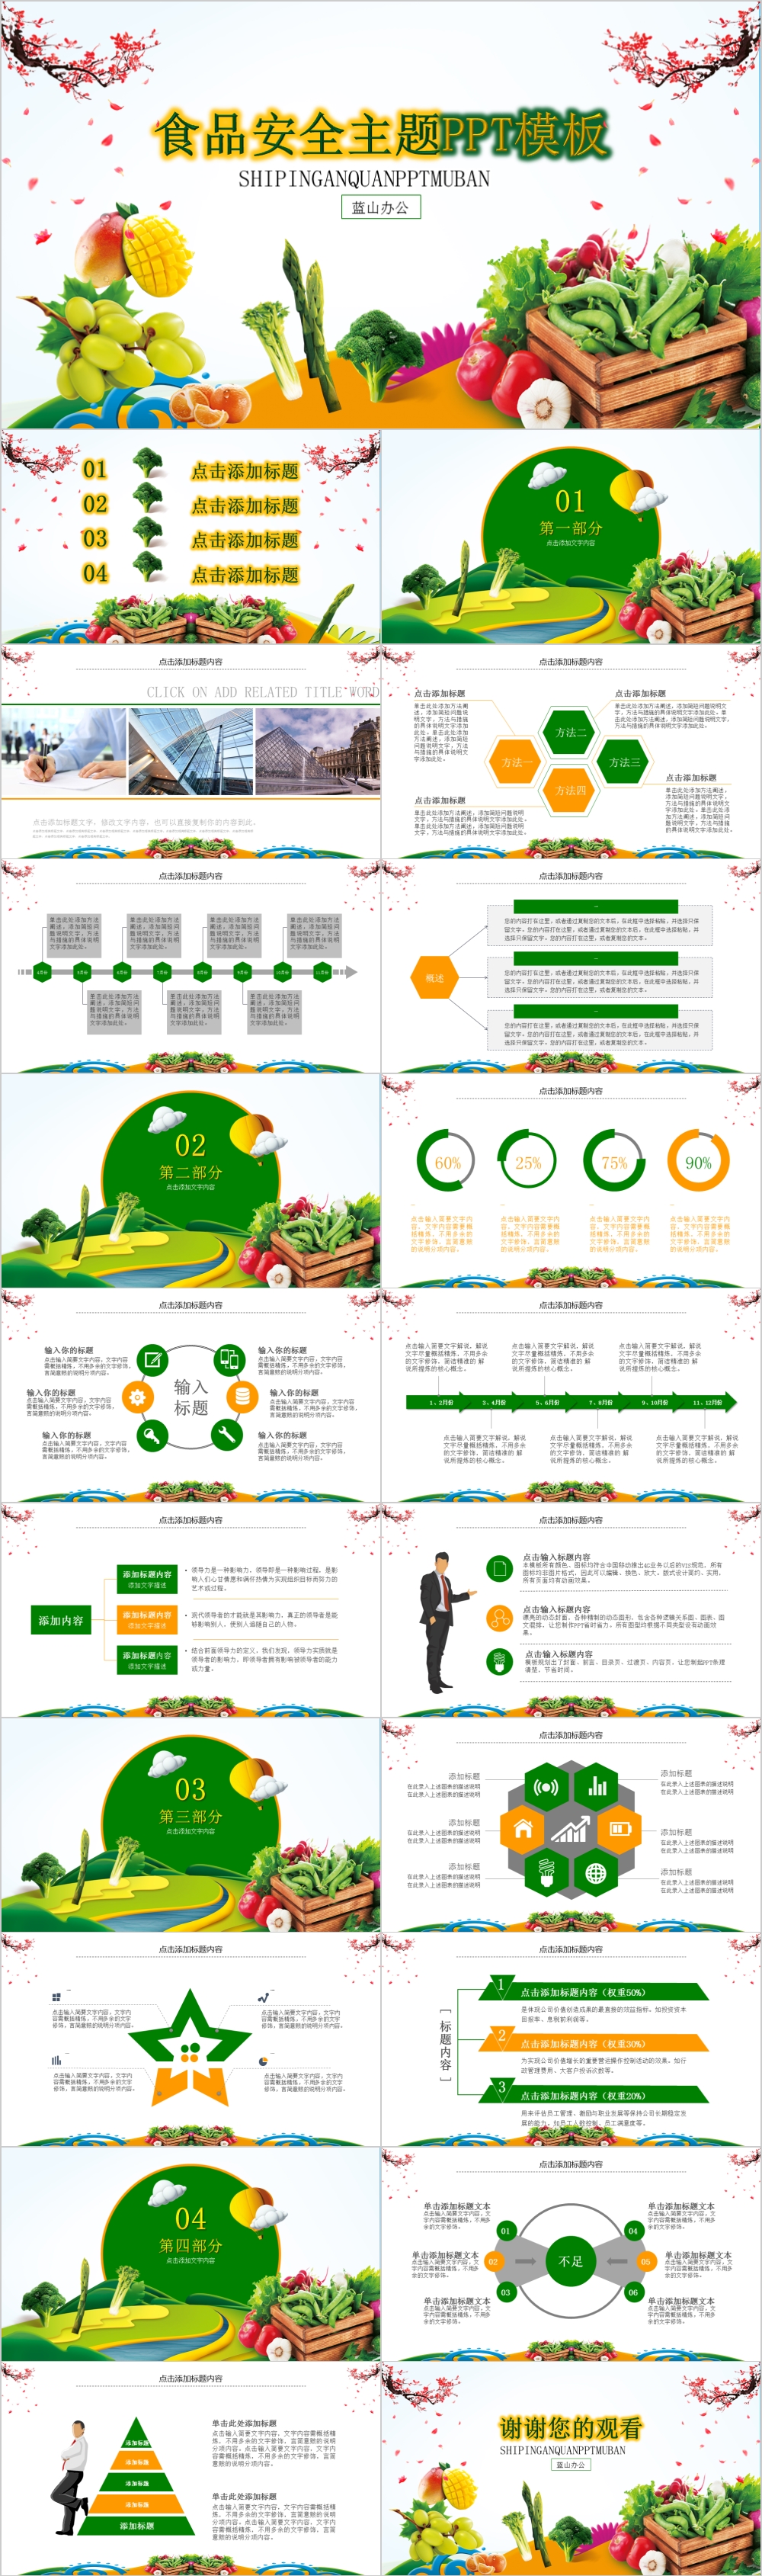 绿色卡通风食品安全主题PPT模板